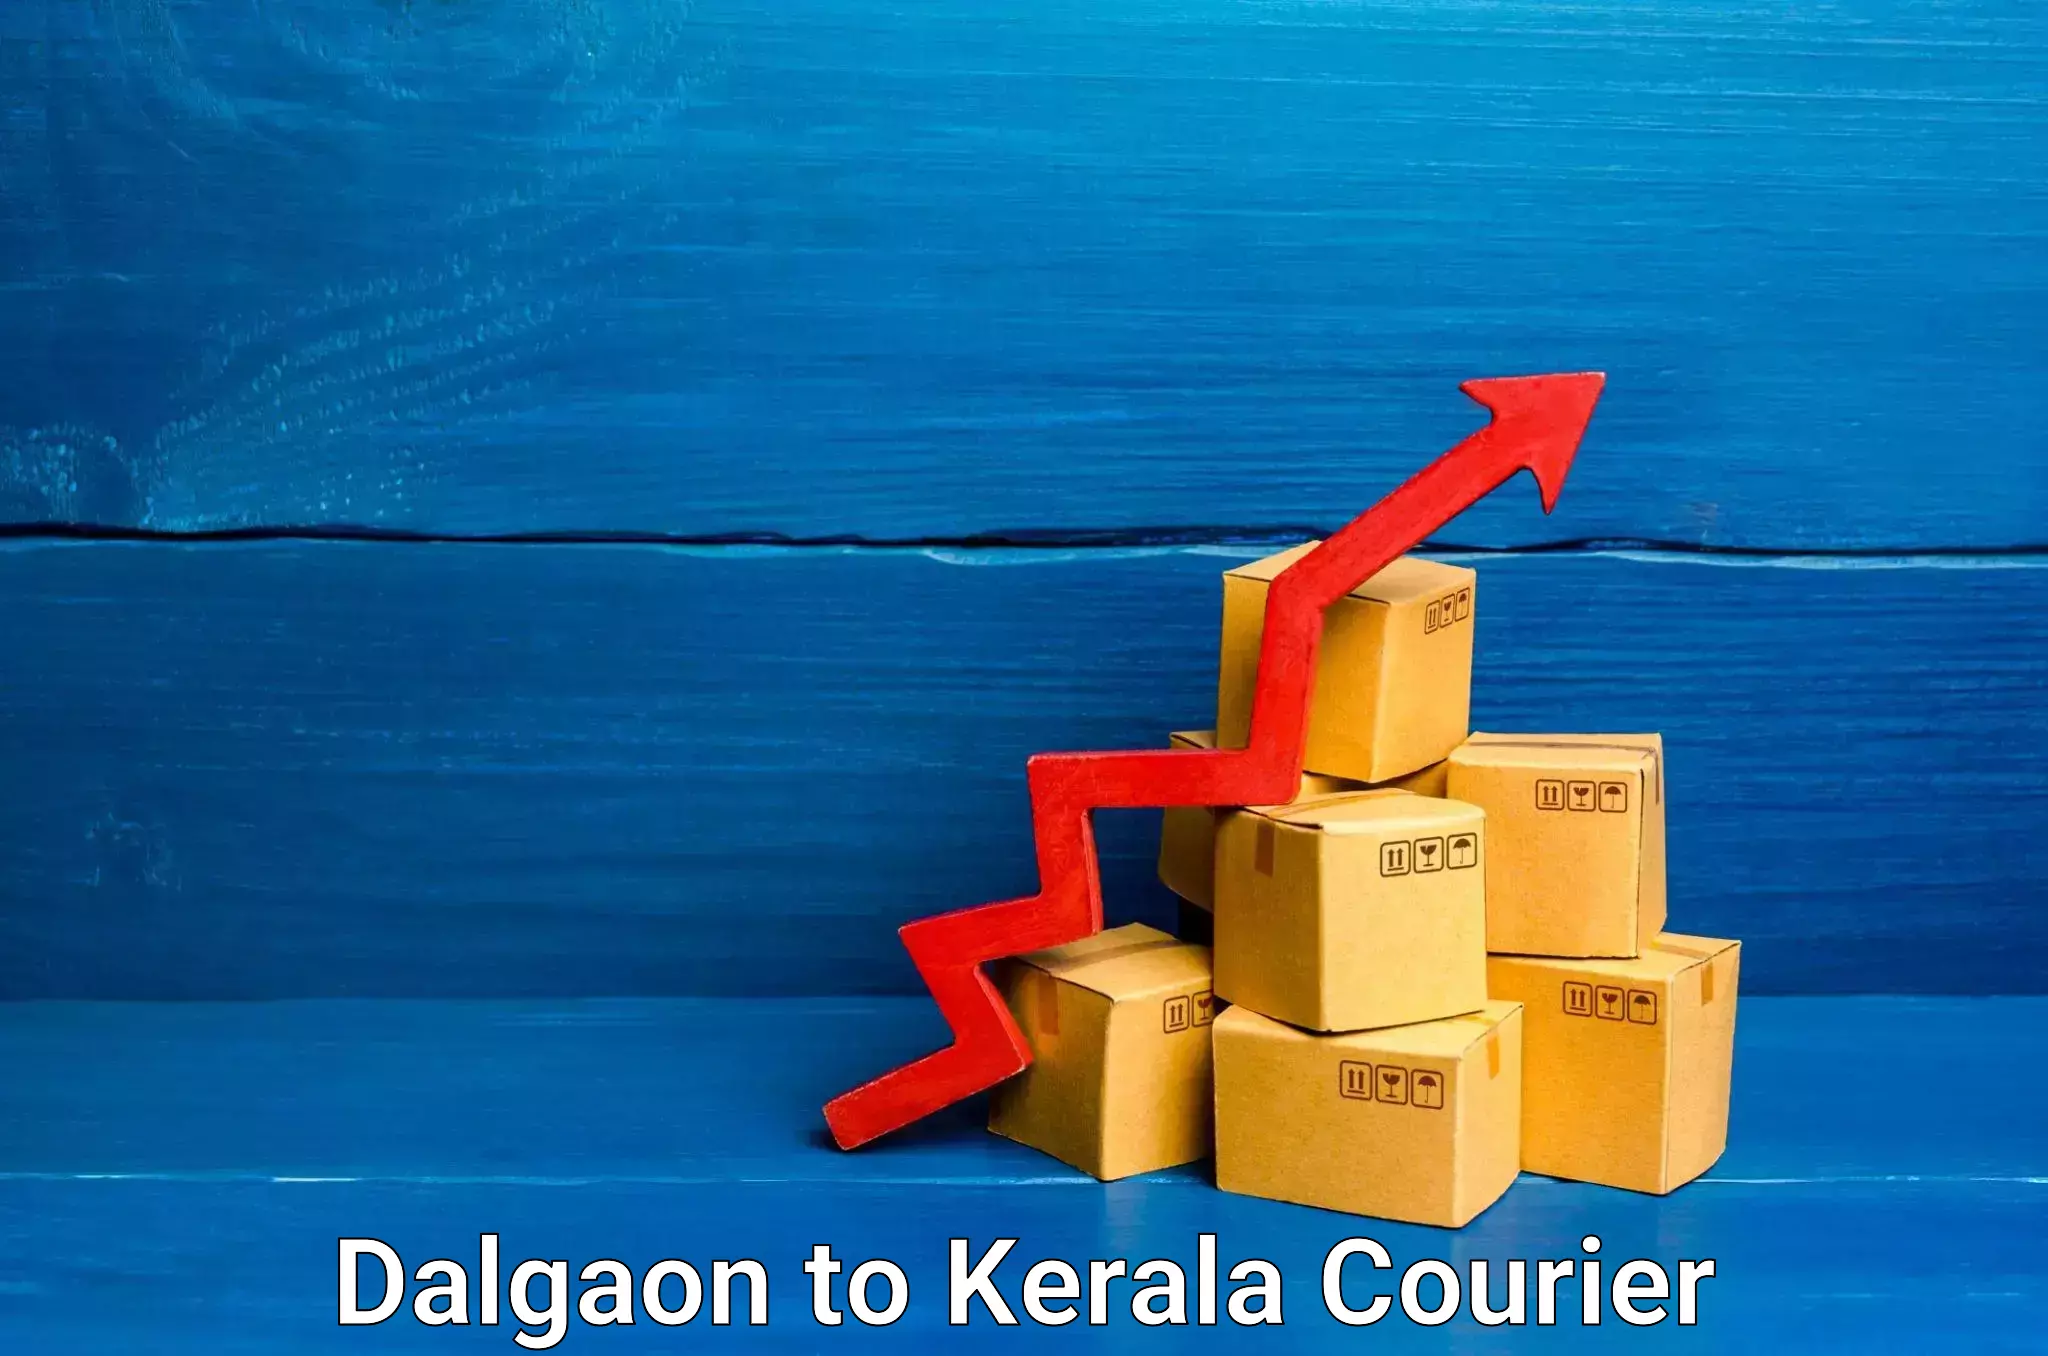 Automated parcel services Dalgaon to Mundakayam